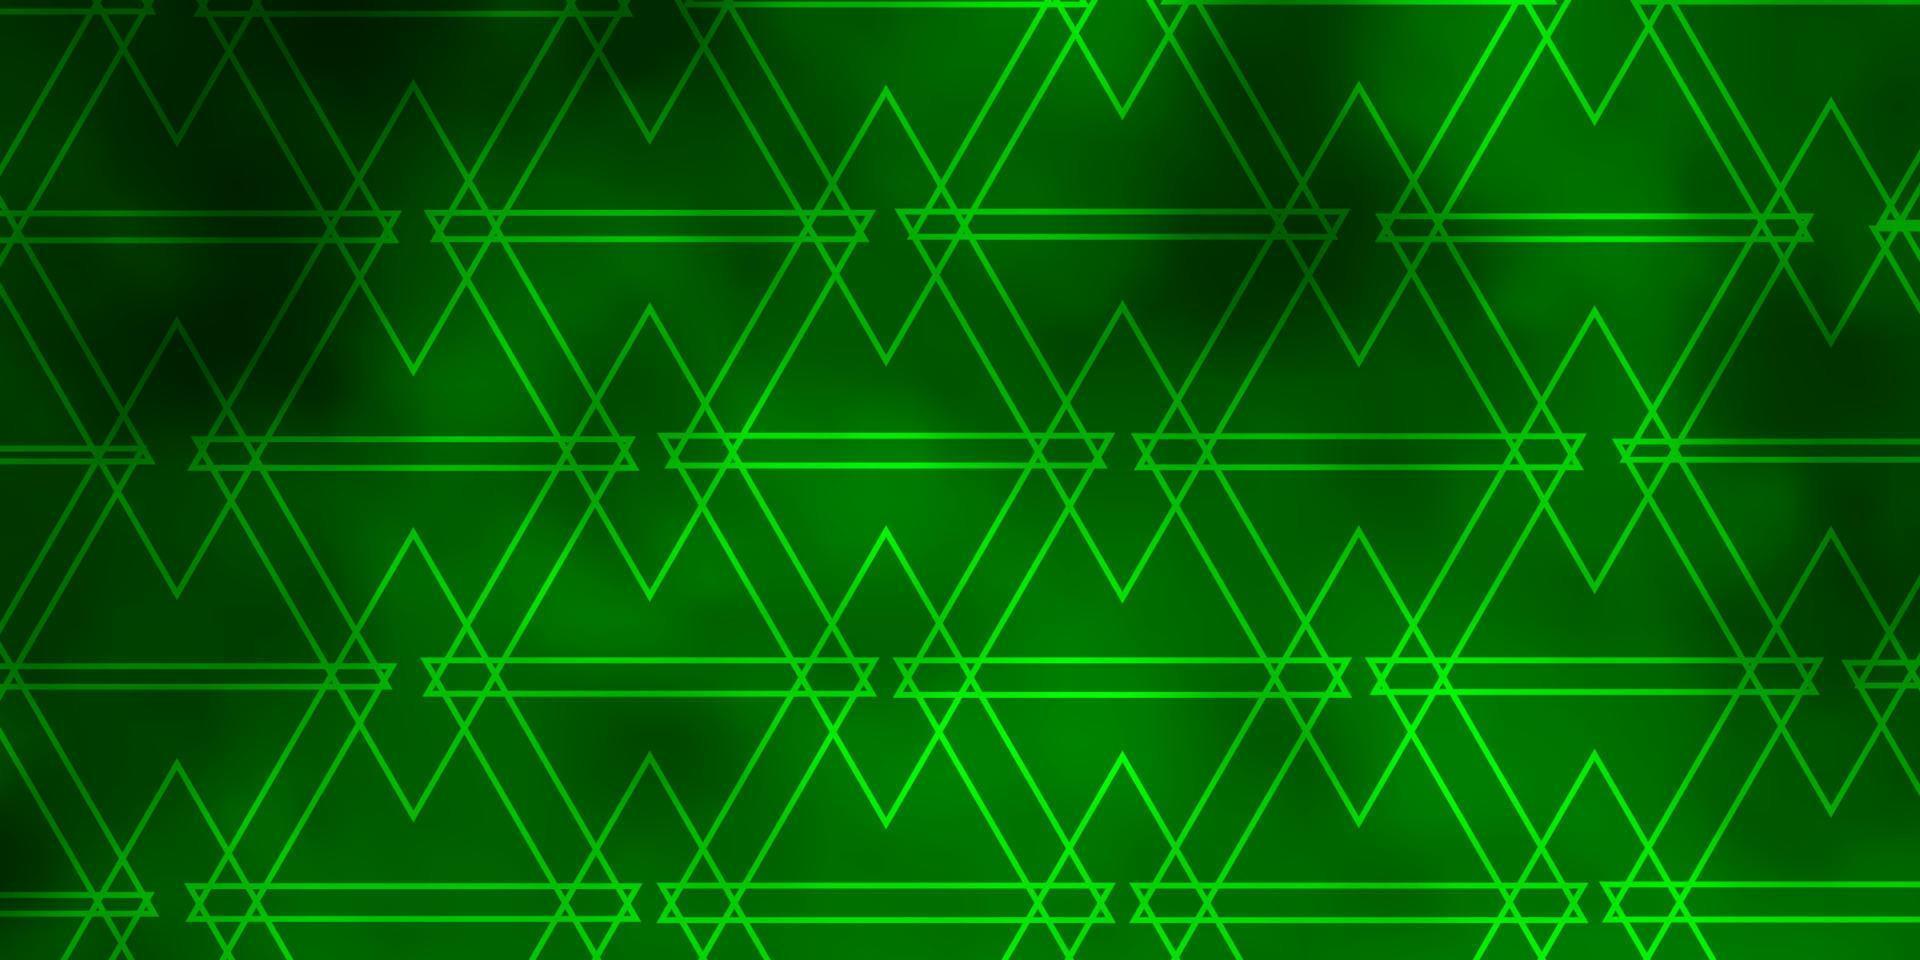 fond de vecteur vert clair avec des triangles.